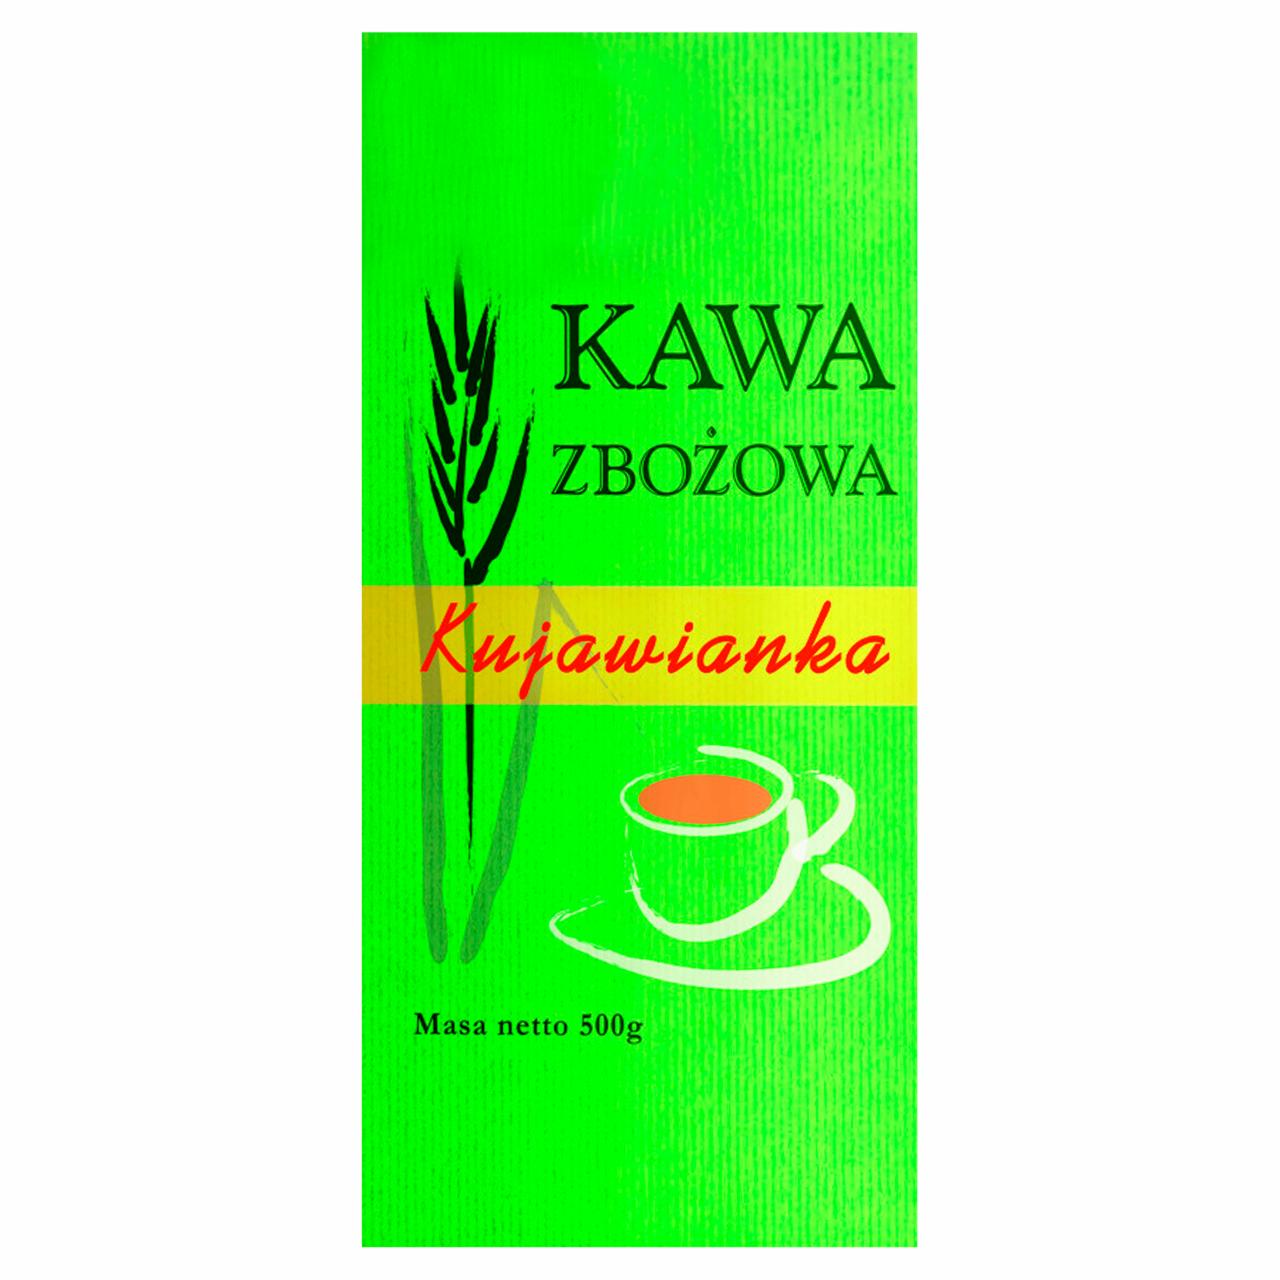 Zdjęcia - Kawa zbożowa Kujawianka 500 g